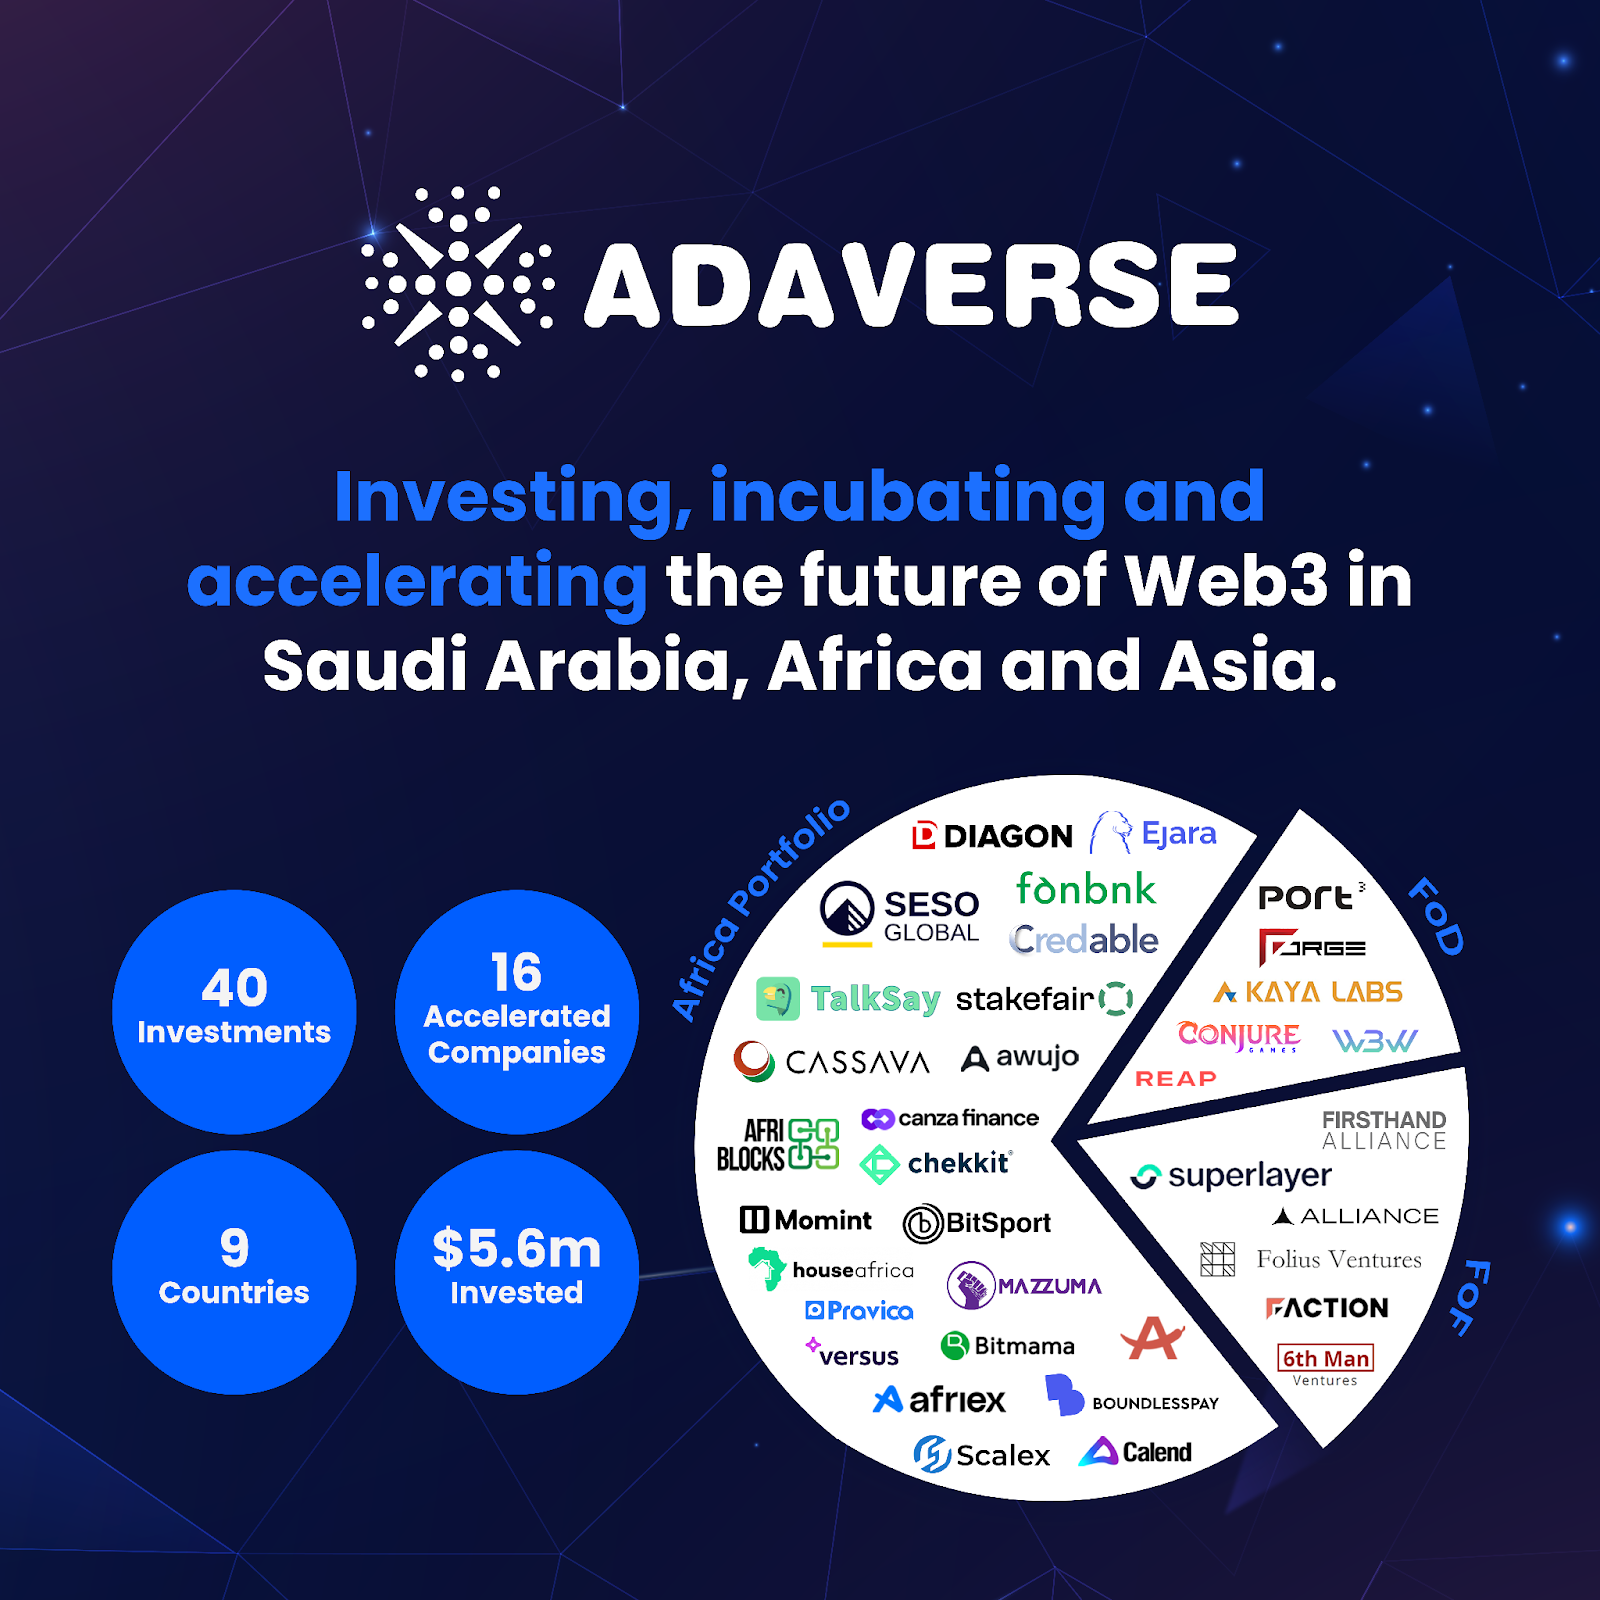 Adaverse 擴展投資組合，進軍沙烏地阿拉伯Web3 市場插图2